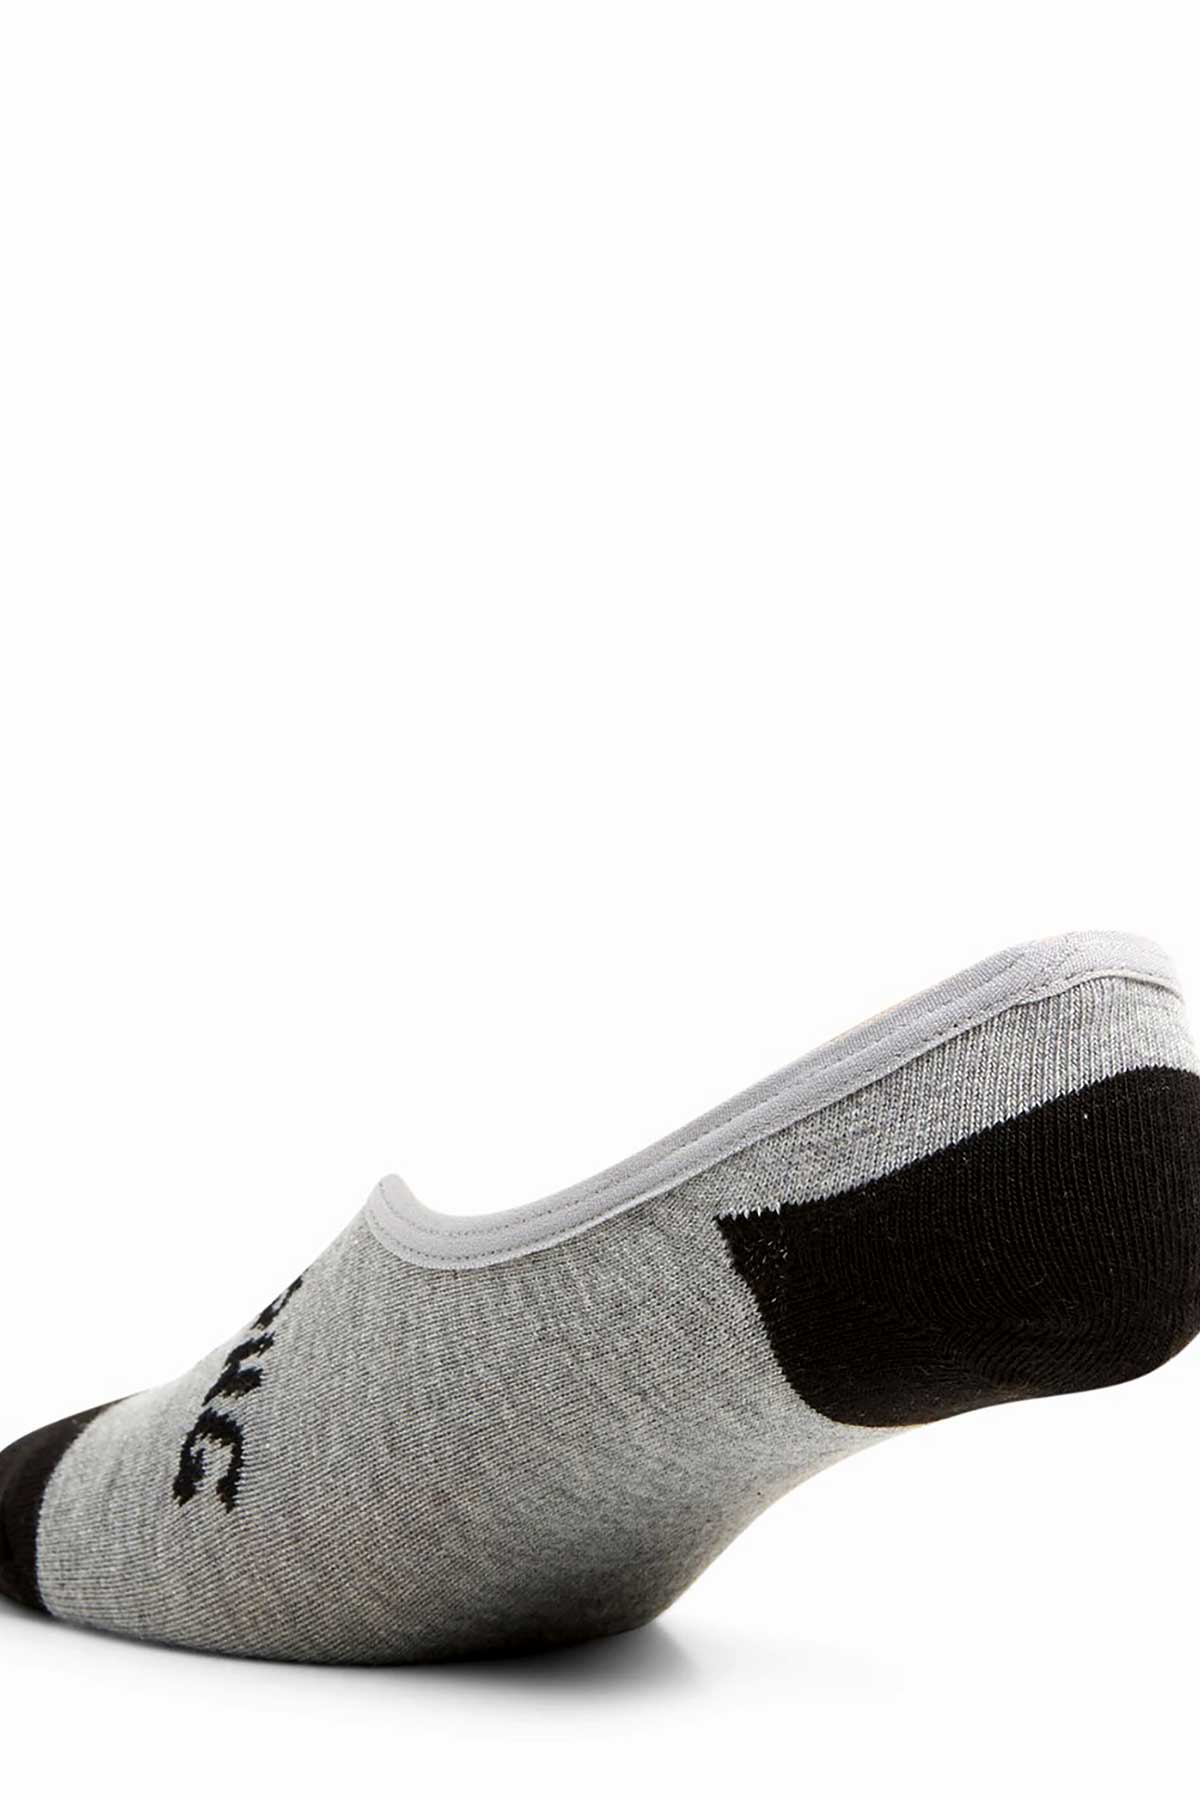 Billabong Invisible Socks 5 Pack, Back View, Grey and Black.